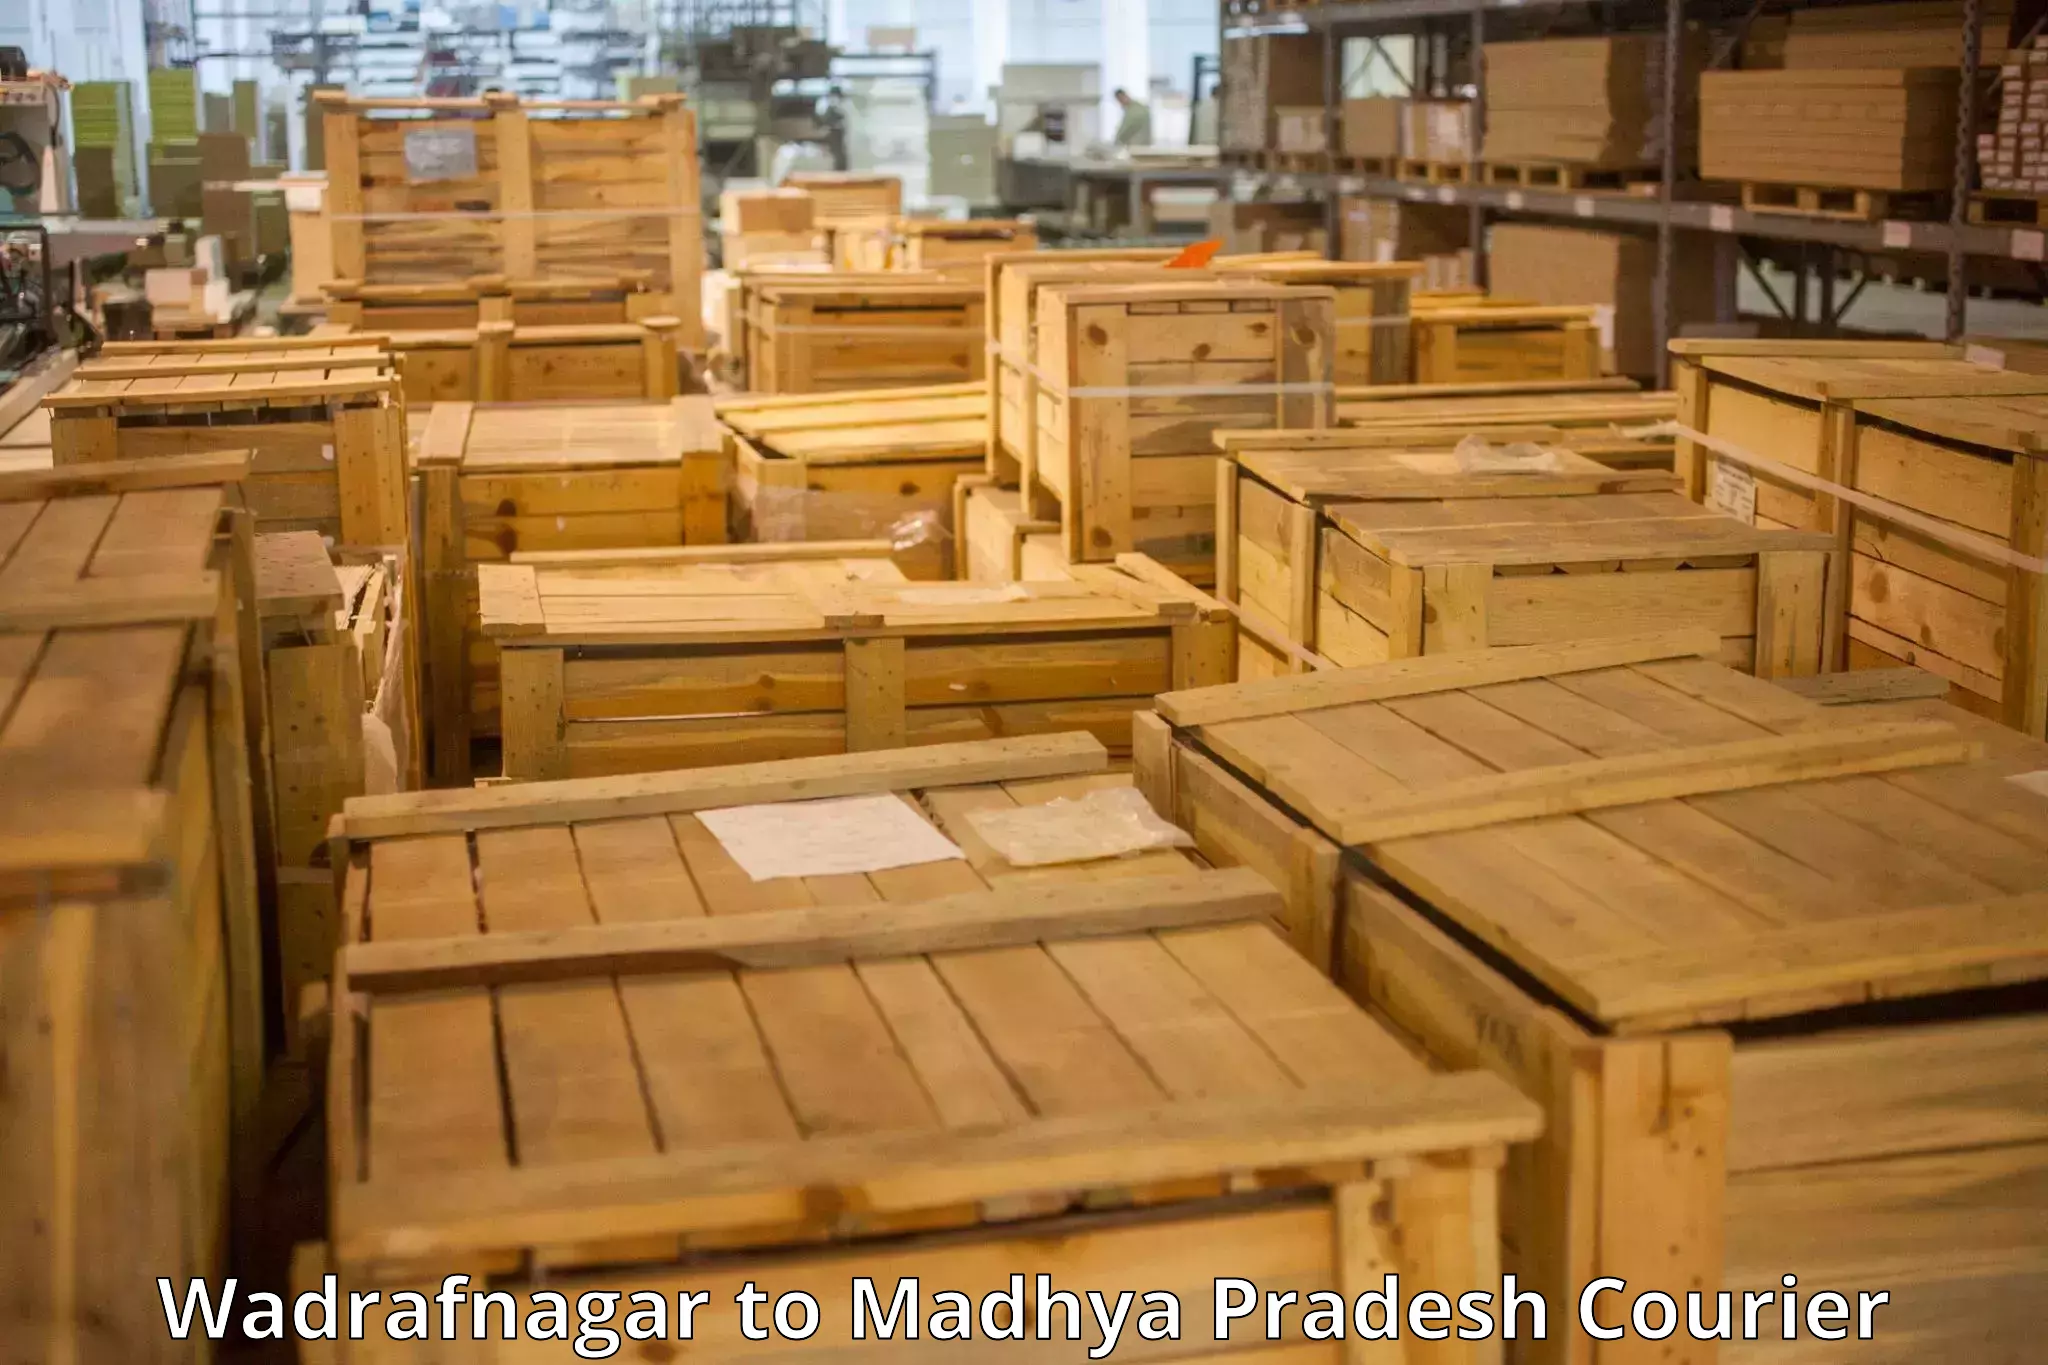 Baggage delivery technology Wadrafnagar to Manawar